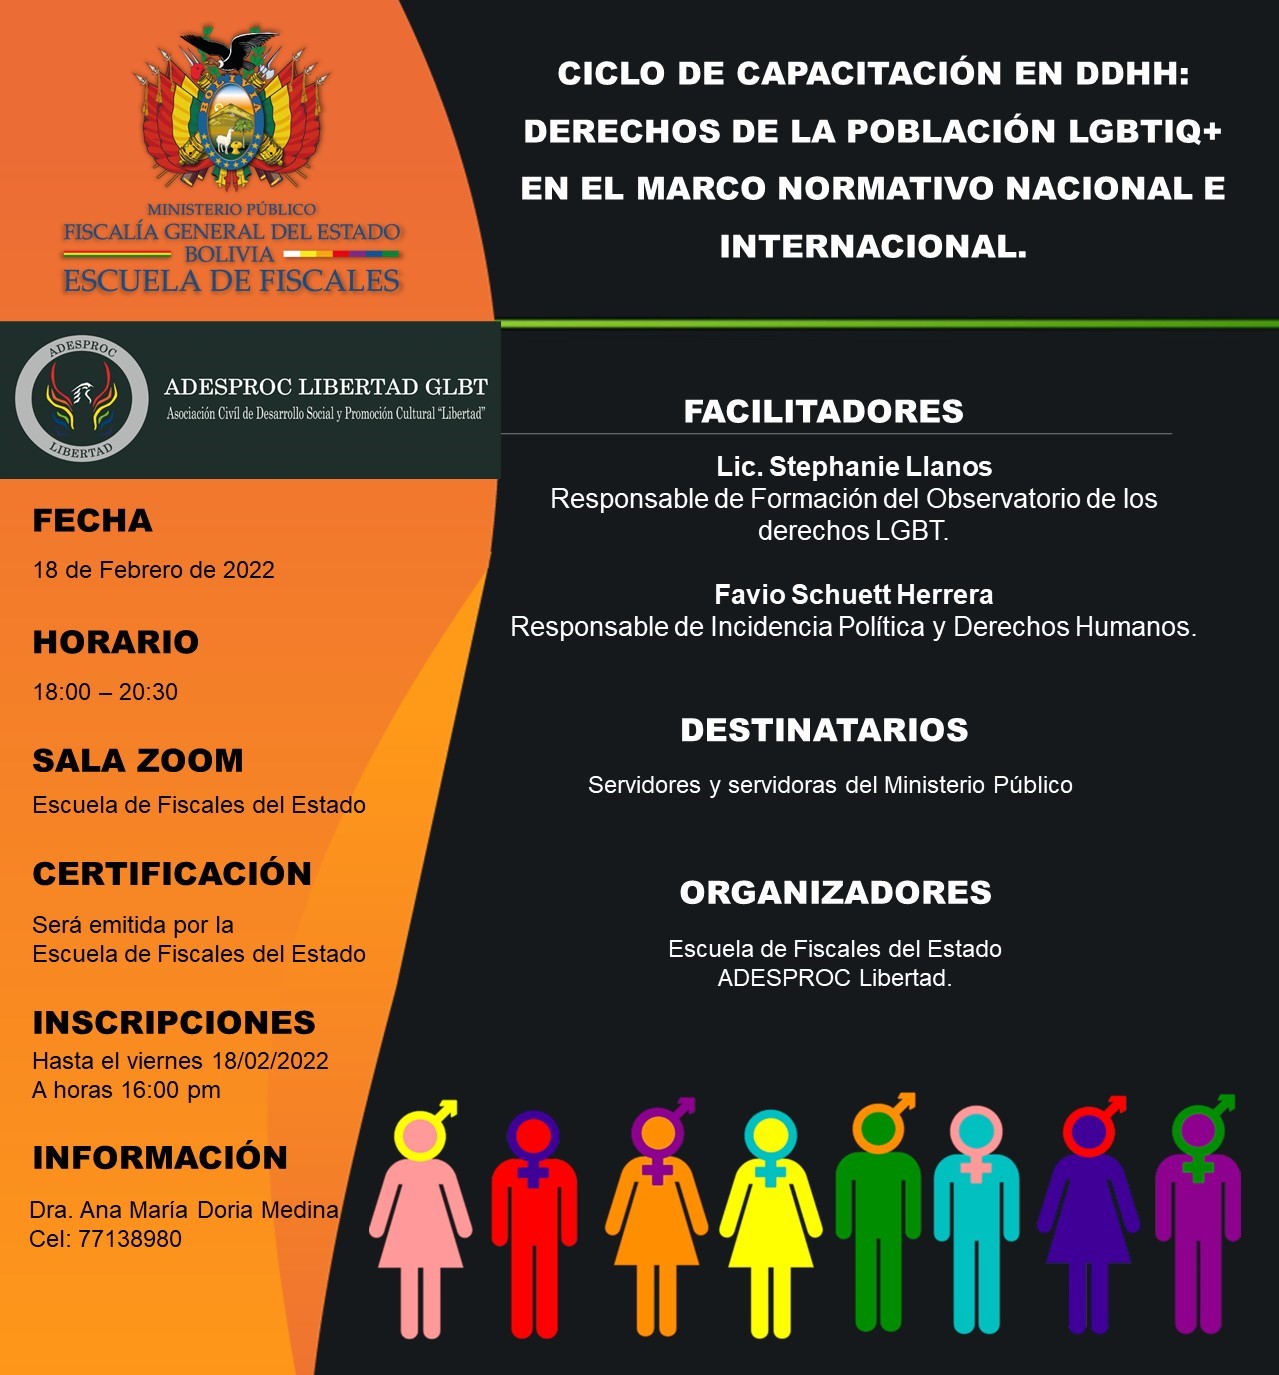 CICLO DE CAPACITACIÓN EN DERECHOS HUMANOS:  DERECHOS DE LA POBLACIÓN LGBTIQ+, EN EL MARCO NORMATIVO NACIONAL E INTERNACIONAL